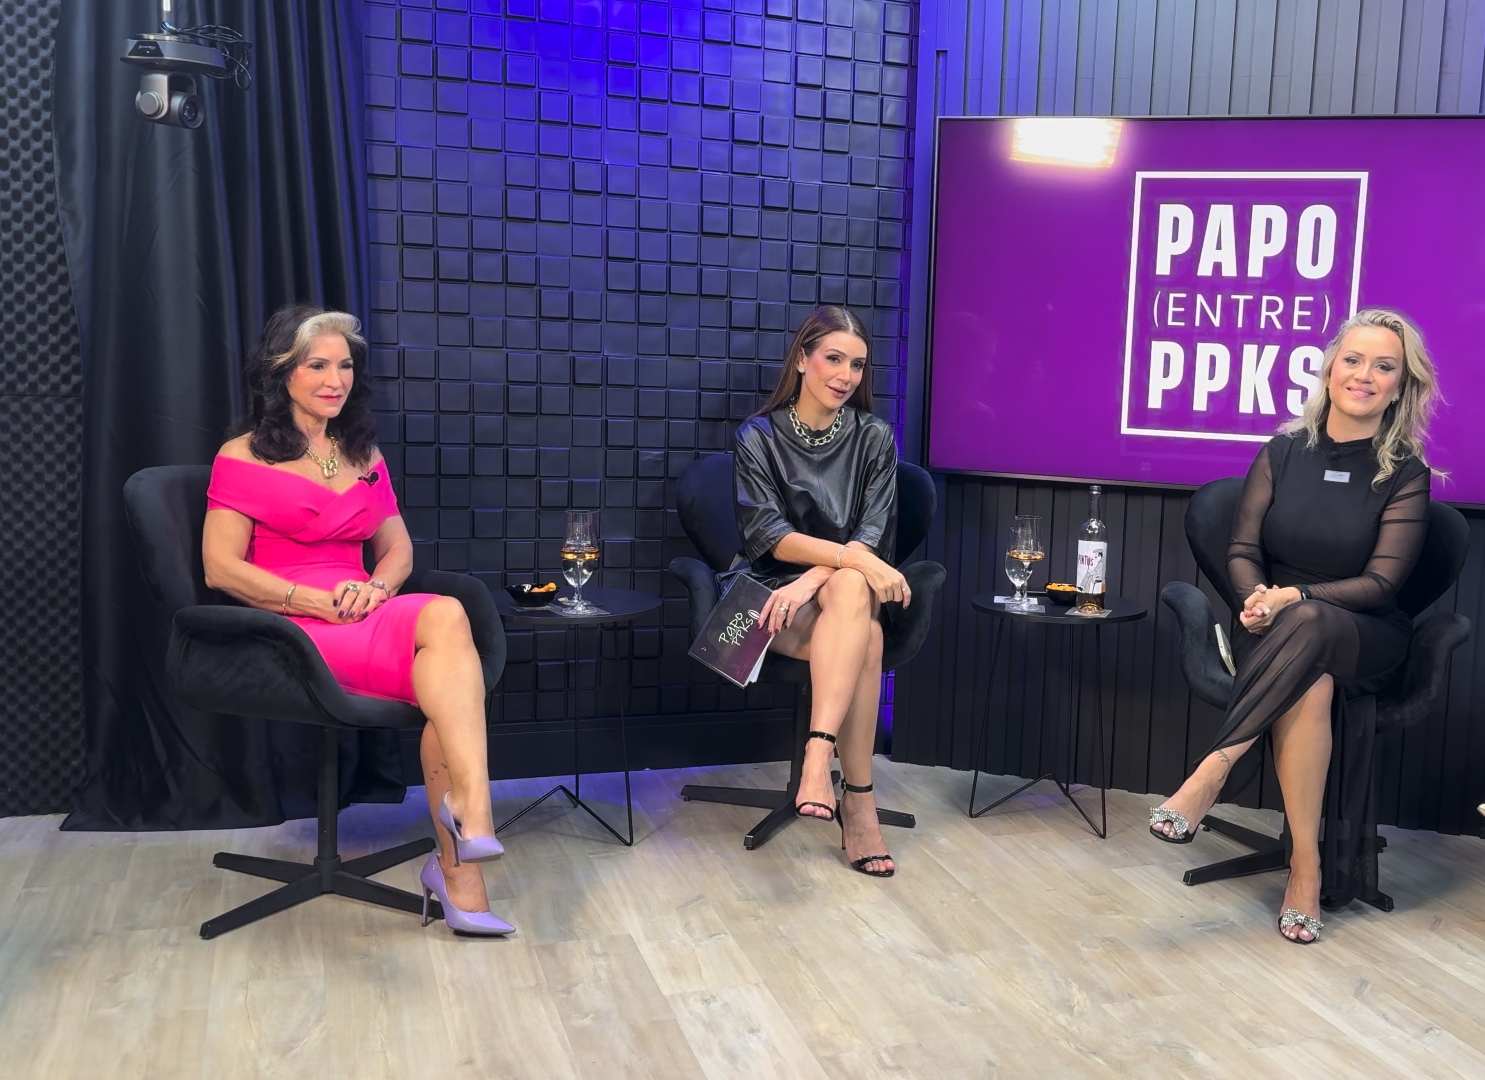 Conheça o podcast Papo Entre PPKs que desvenda o universo feminino com humor e informação